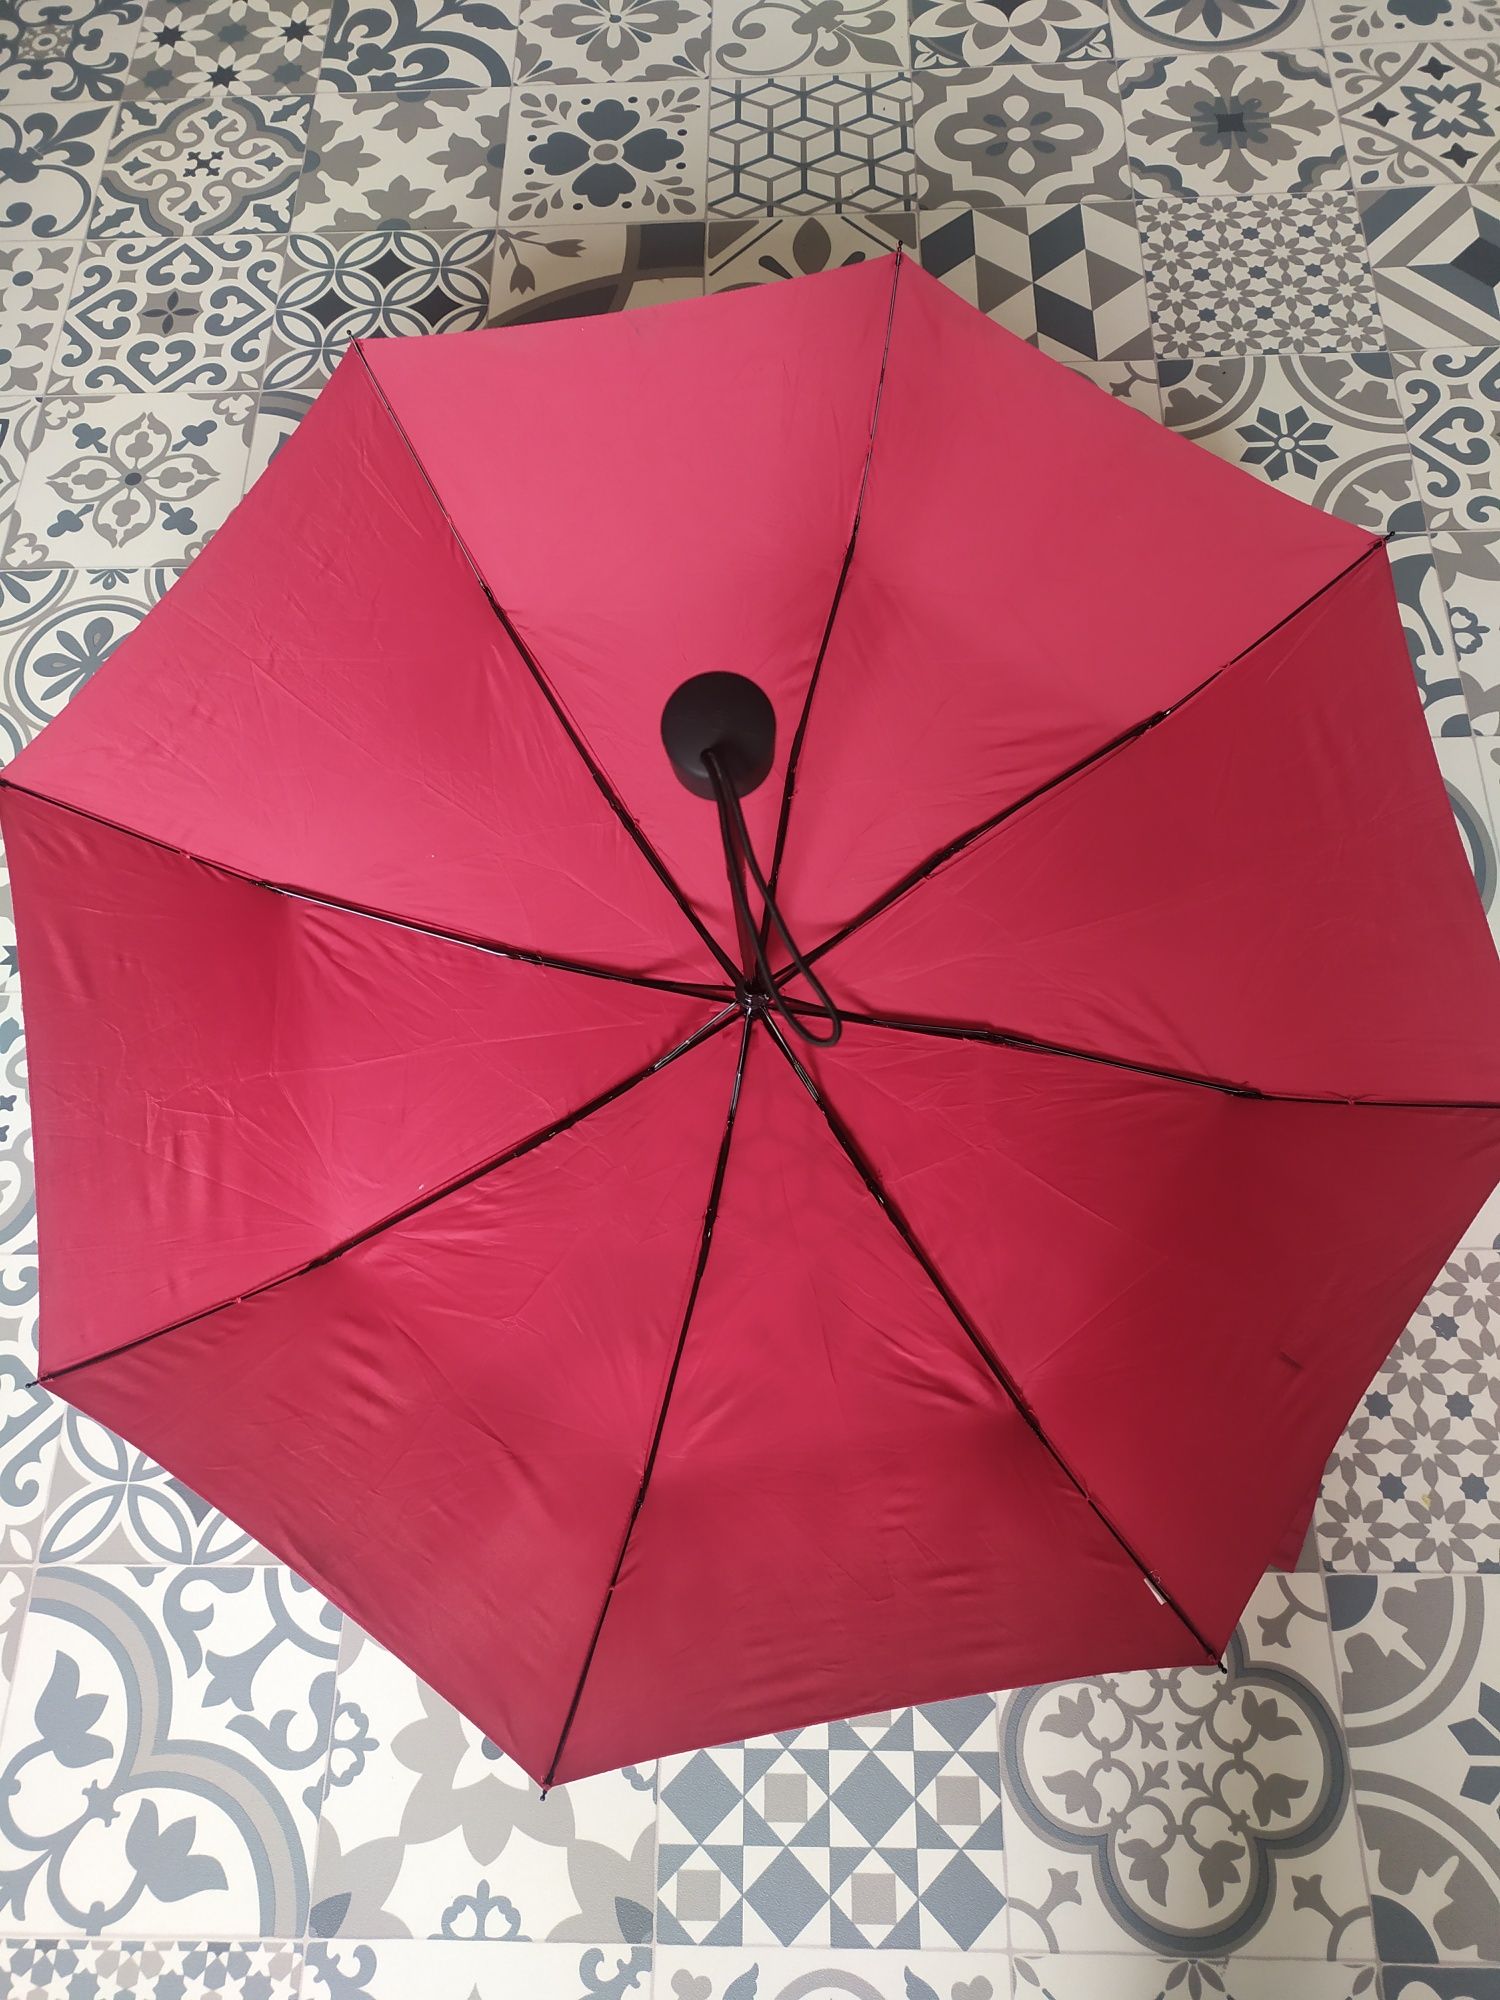 Czerwona parasolka parasol składana mała